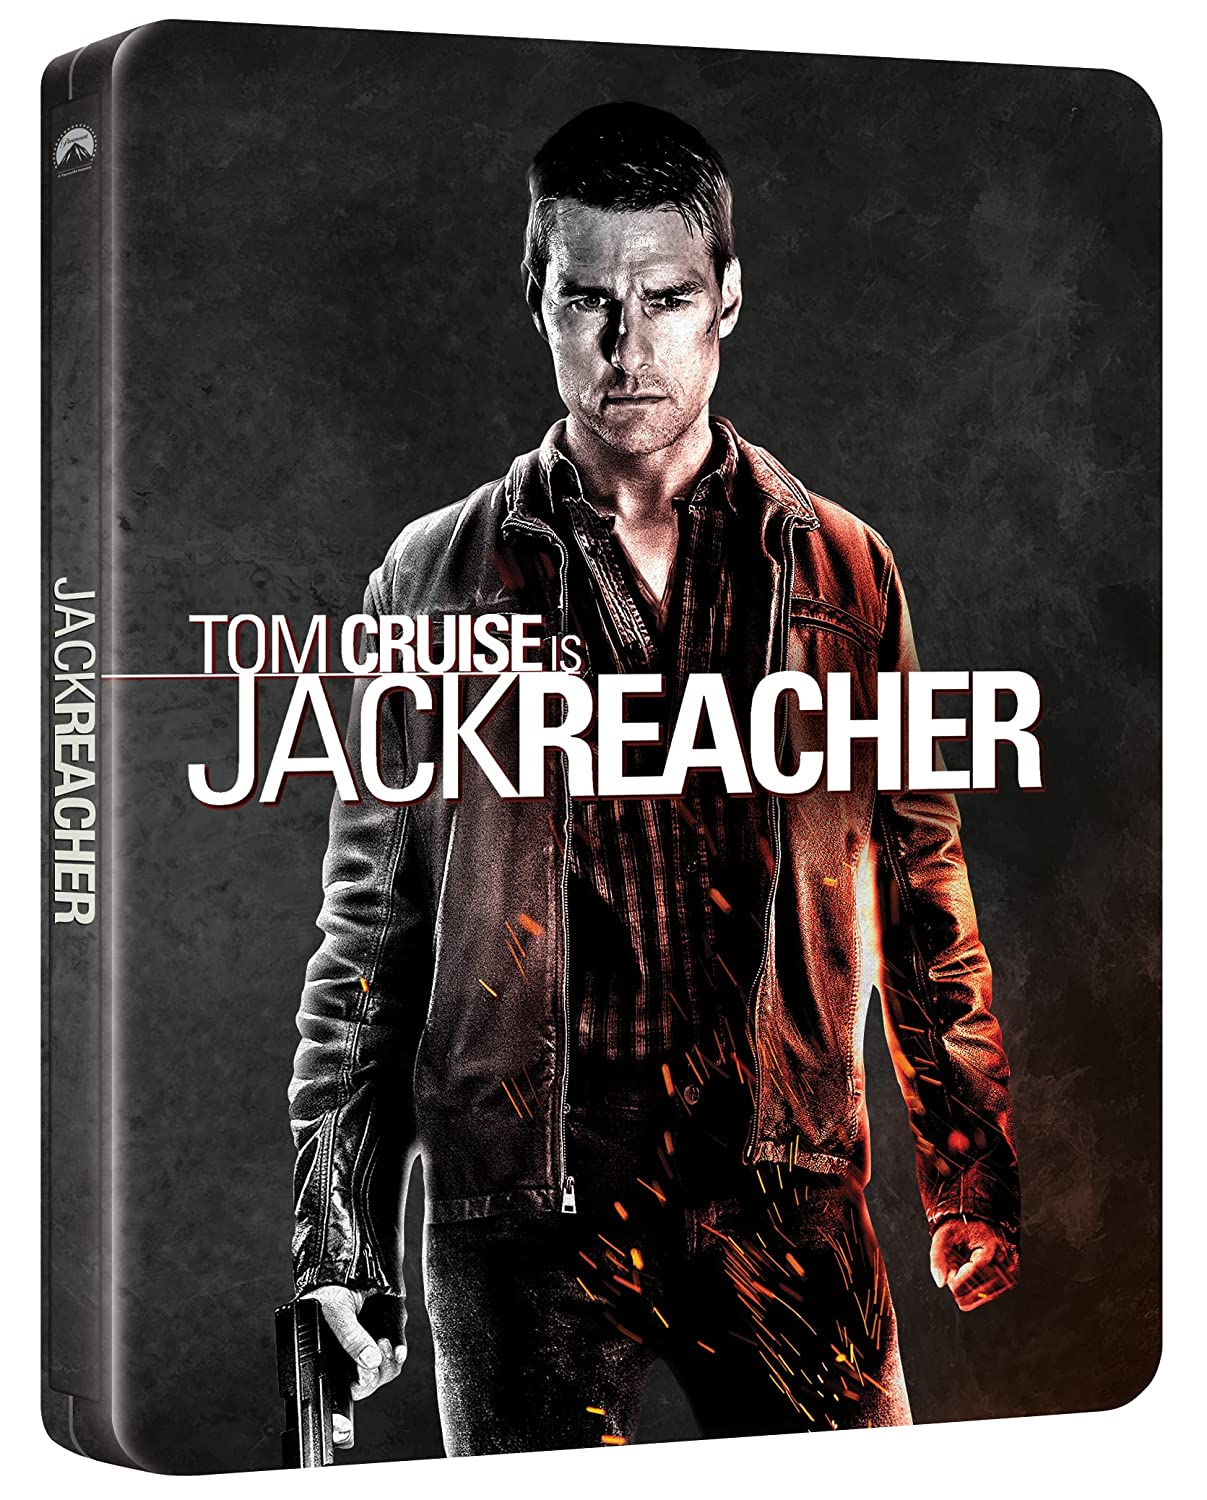 Jack Reacher – La prova decisiva: in limited steelbook il thriller